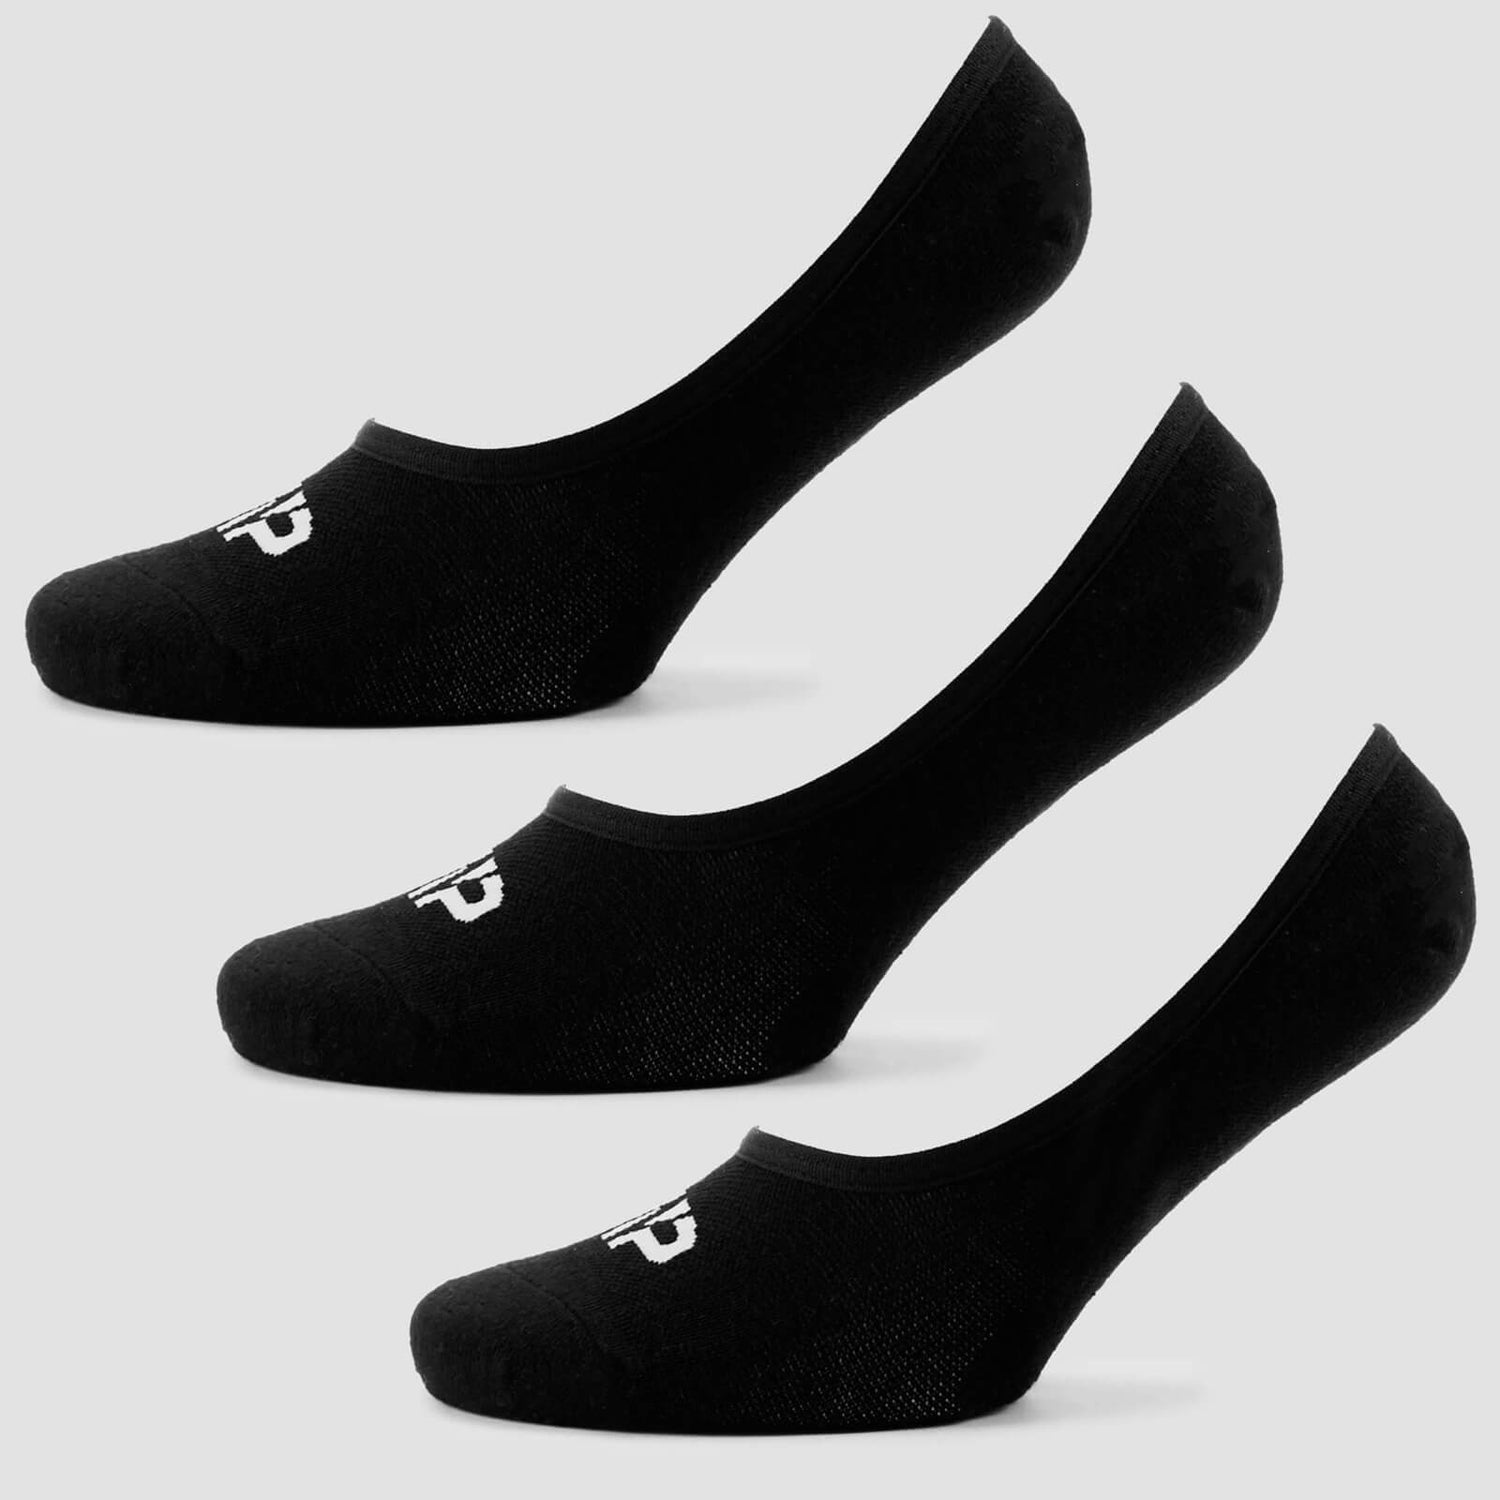 Γυναικείες Αόρατες Κάλτσες - Μαύρες - UK 3-6